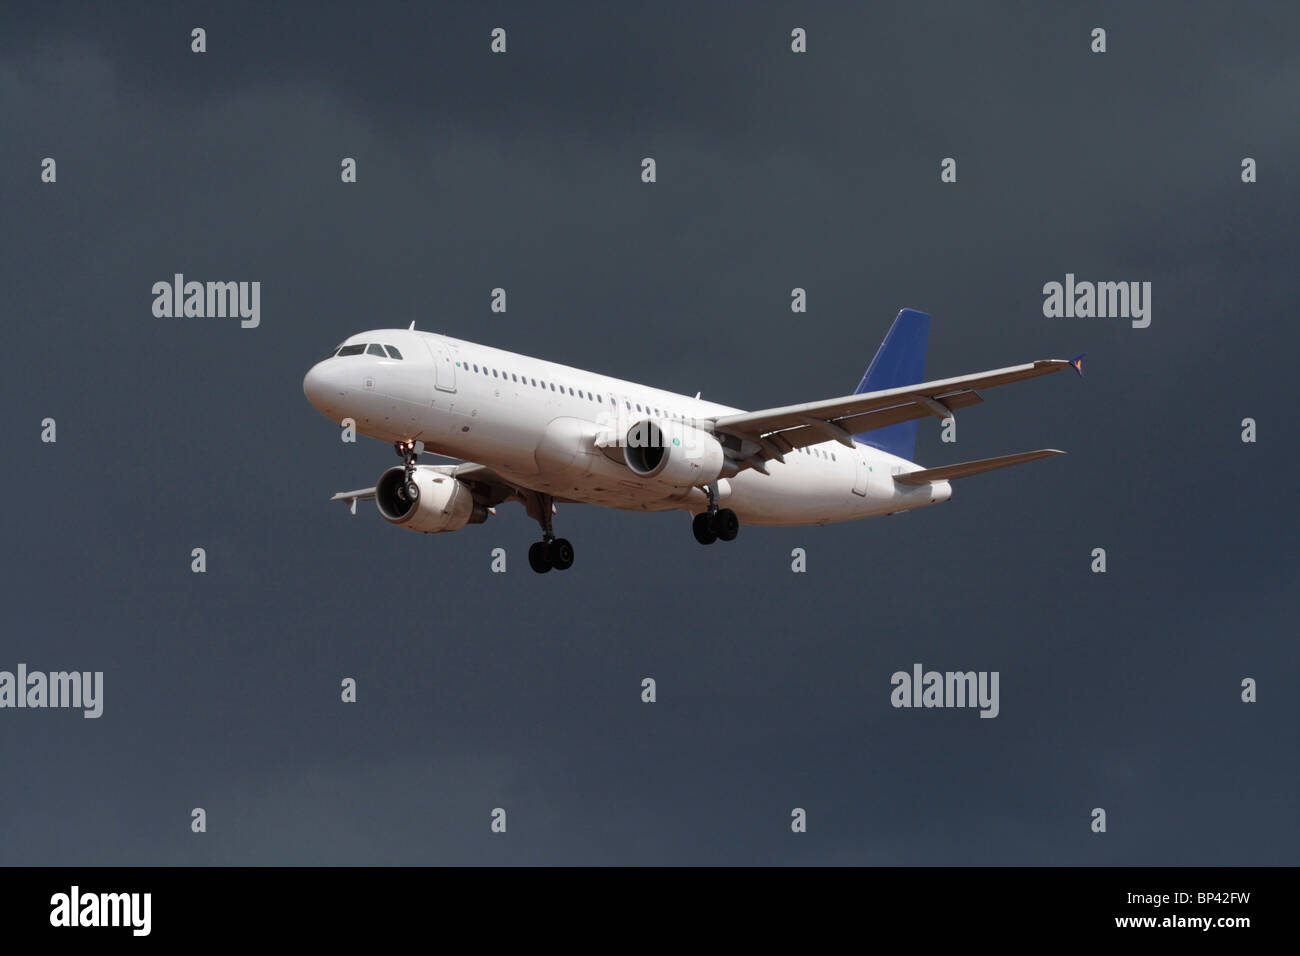 Airbus A320 Passagierflugzeug fliegt in einem dunkel bewölkten Himmel an. Keine weiteren Details gelöscht. Kommerzielle Flugreisen, Luftfahrt. Stockfoto